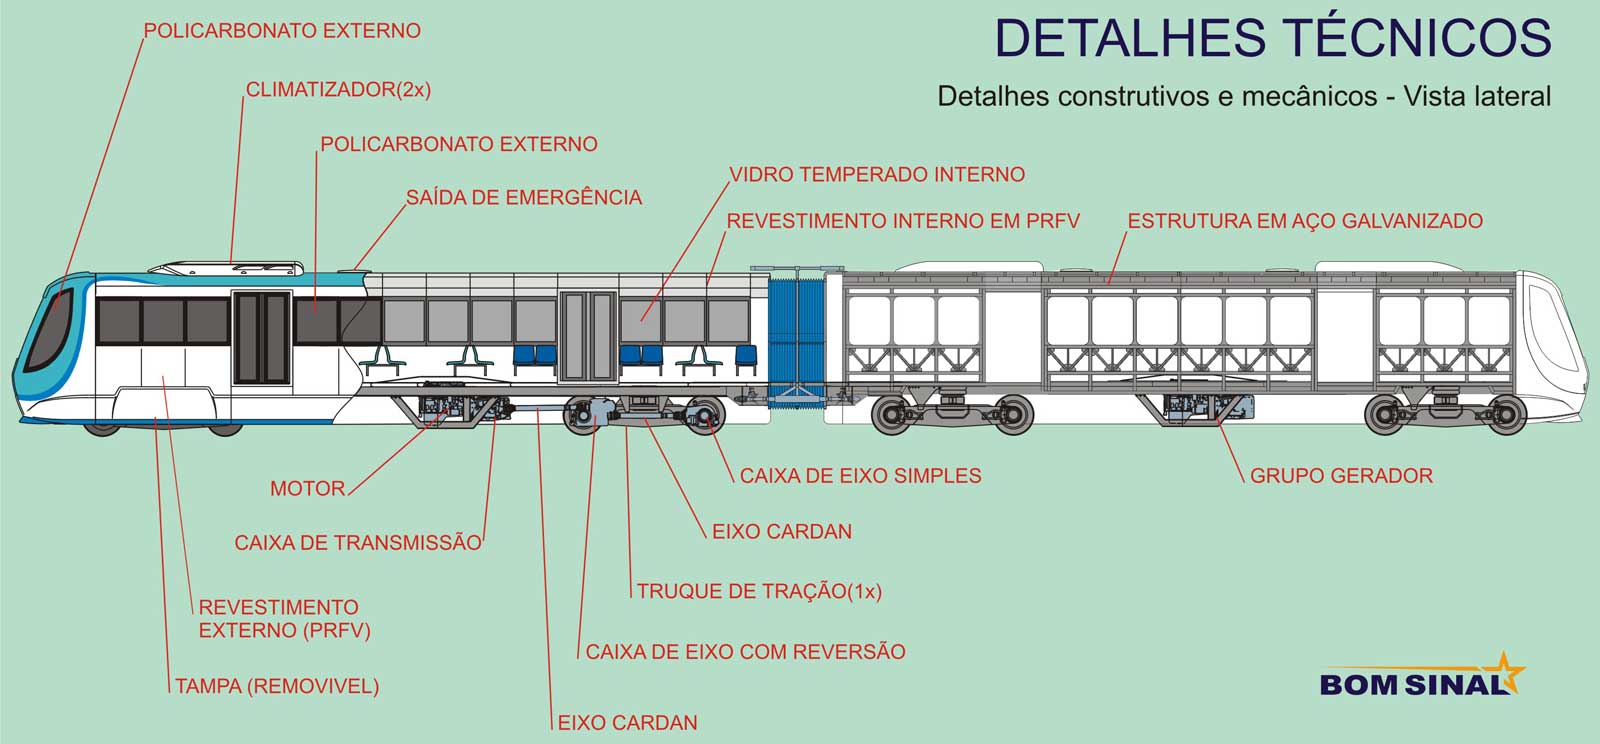 Detalhes técnicos e construtivos do trem - vista lateral